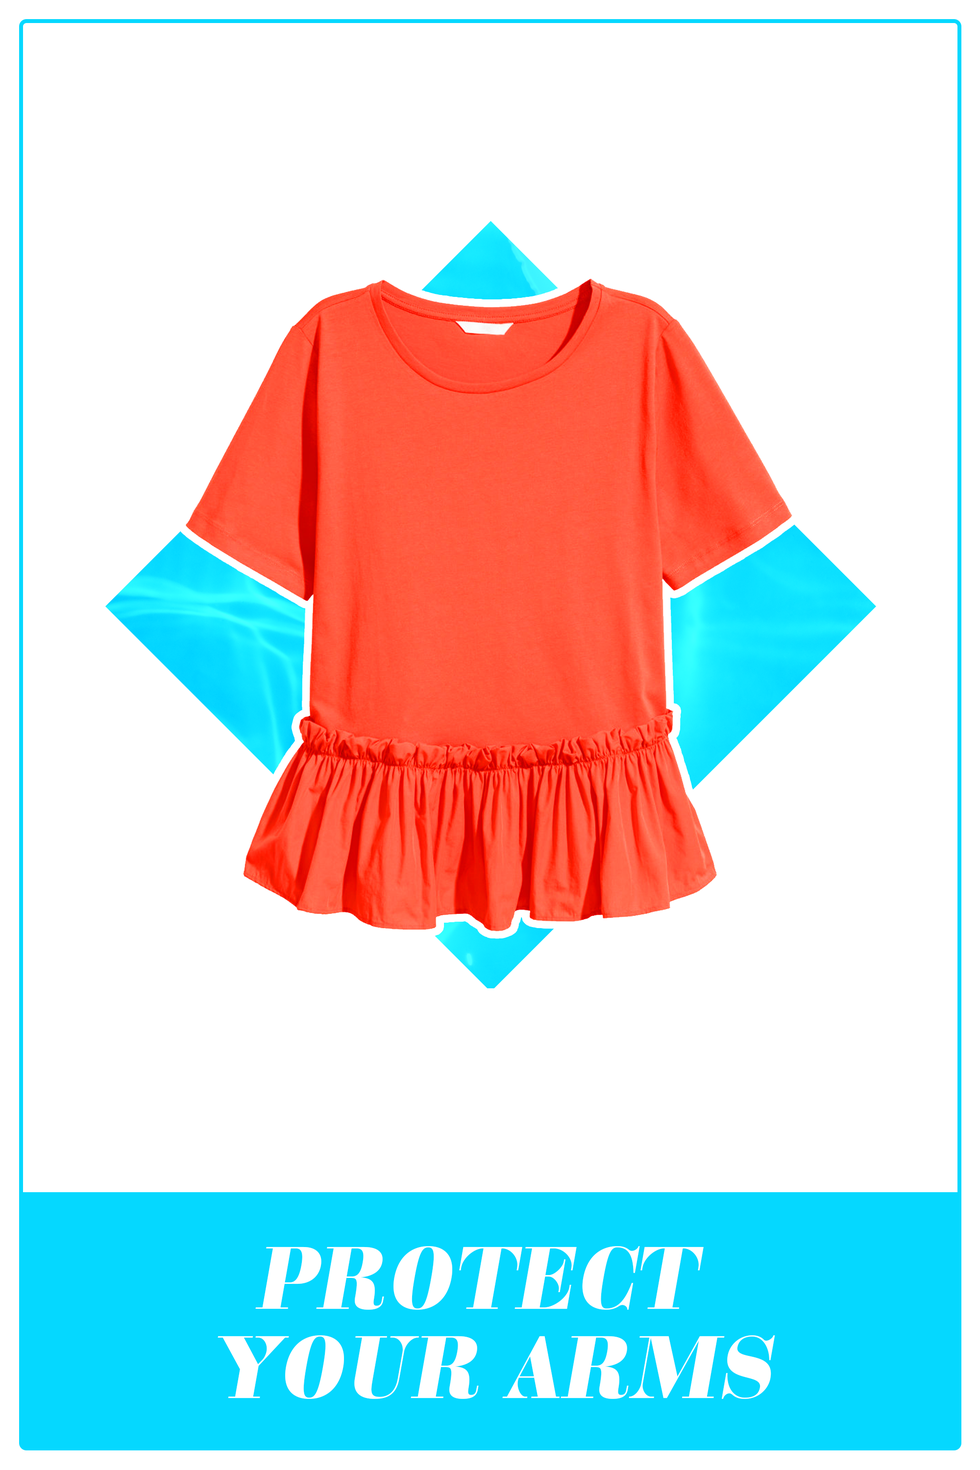 Clothing, Blue, Orange, Turquoise, Aqua, Product, Sleeve, Teal, Pink, Blouse, 